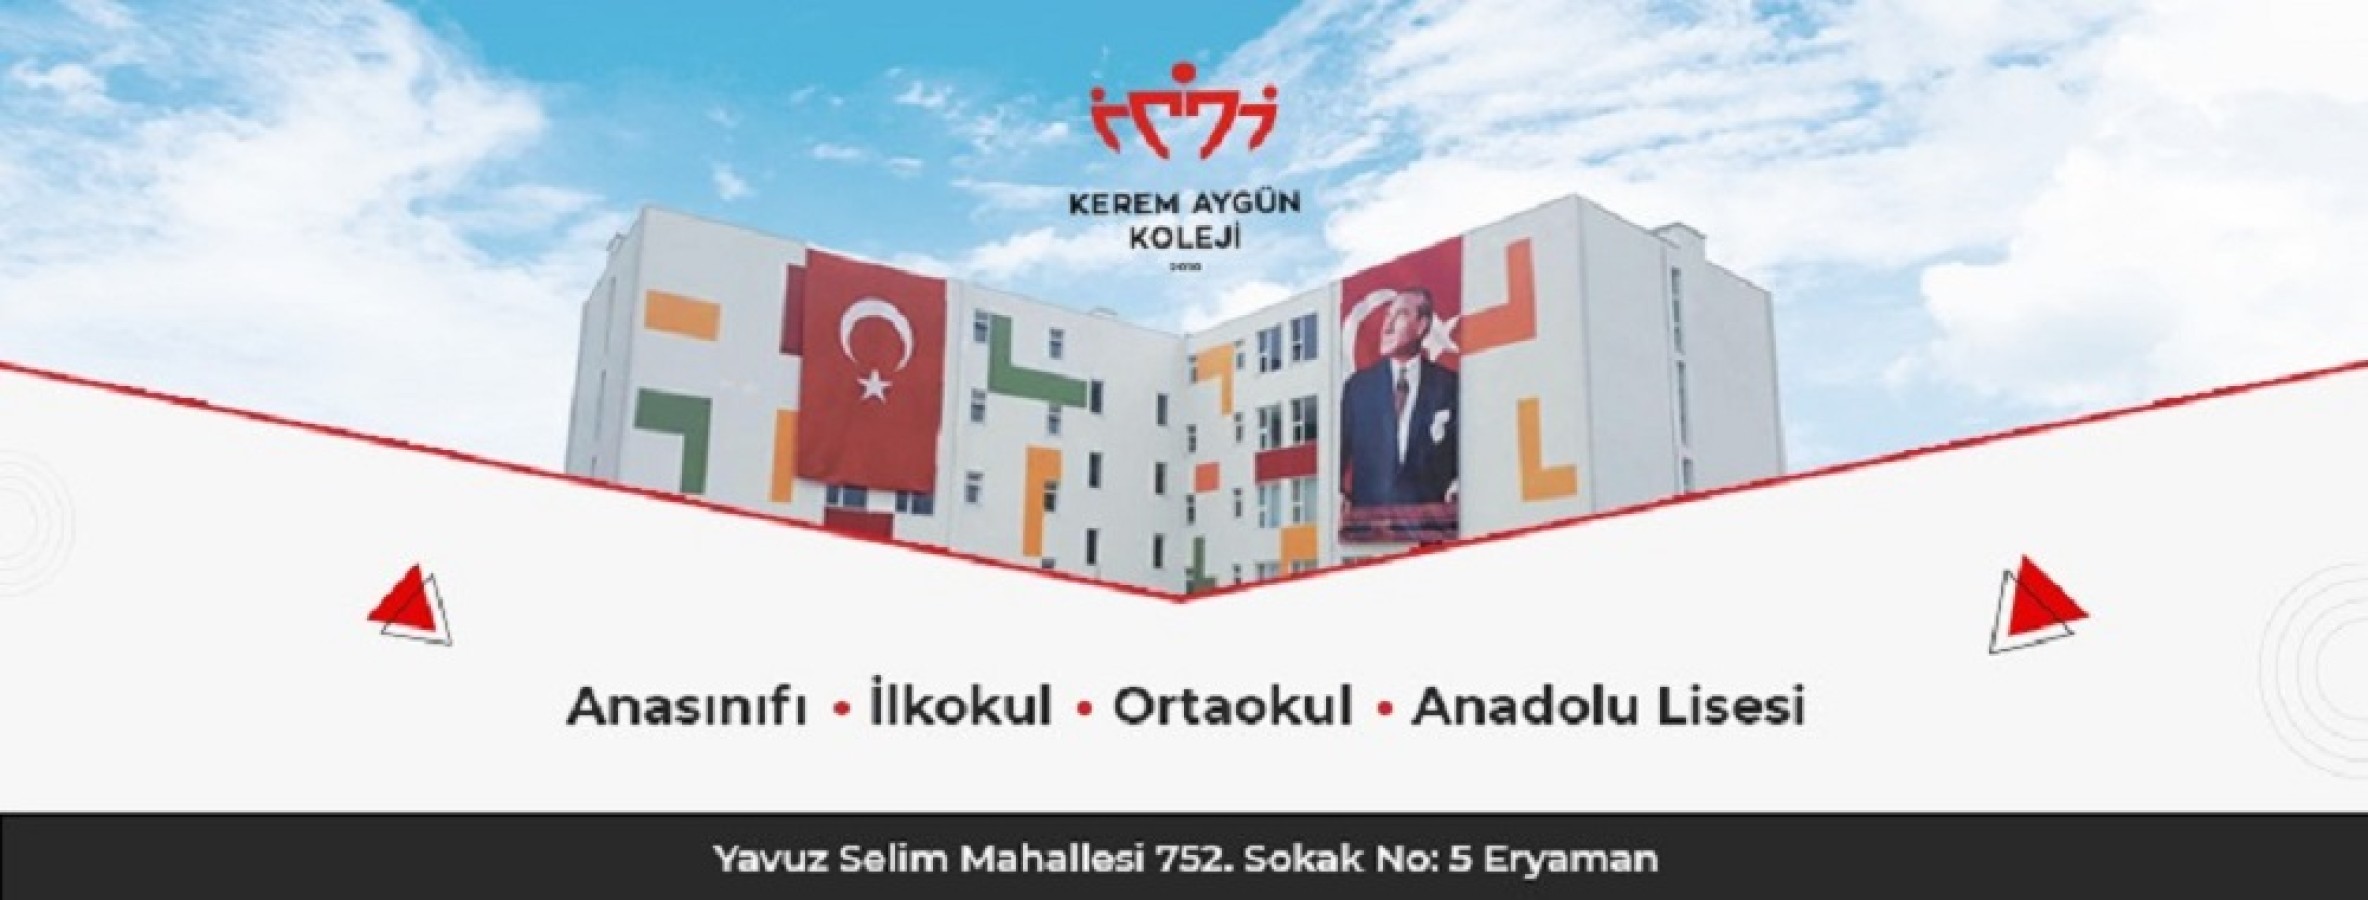 Ankara’da Eğitimde En Gelişmiş Kolejlerinden Kerem Aygün Koleji;